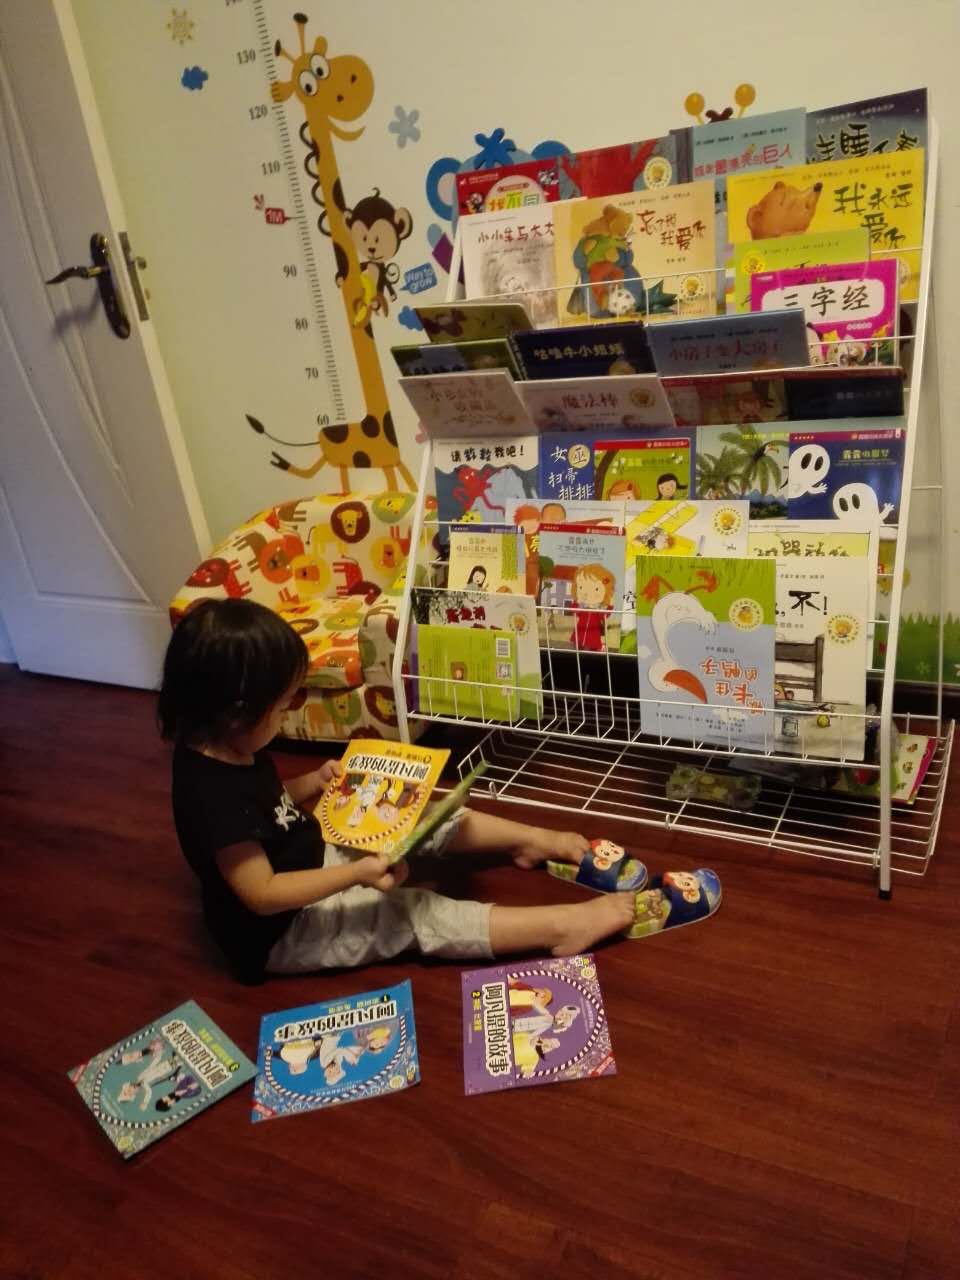 书本质量很好宝宝也很喜欢 每天晚上睡觉前必讲的 也希望孩子能养成自我阅读的好习惯。送货也蛮快的。